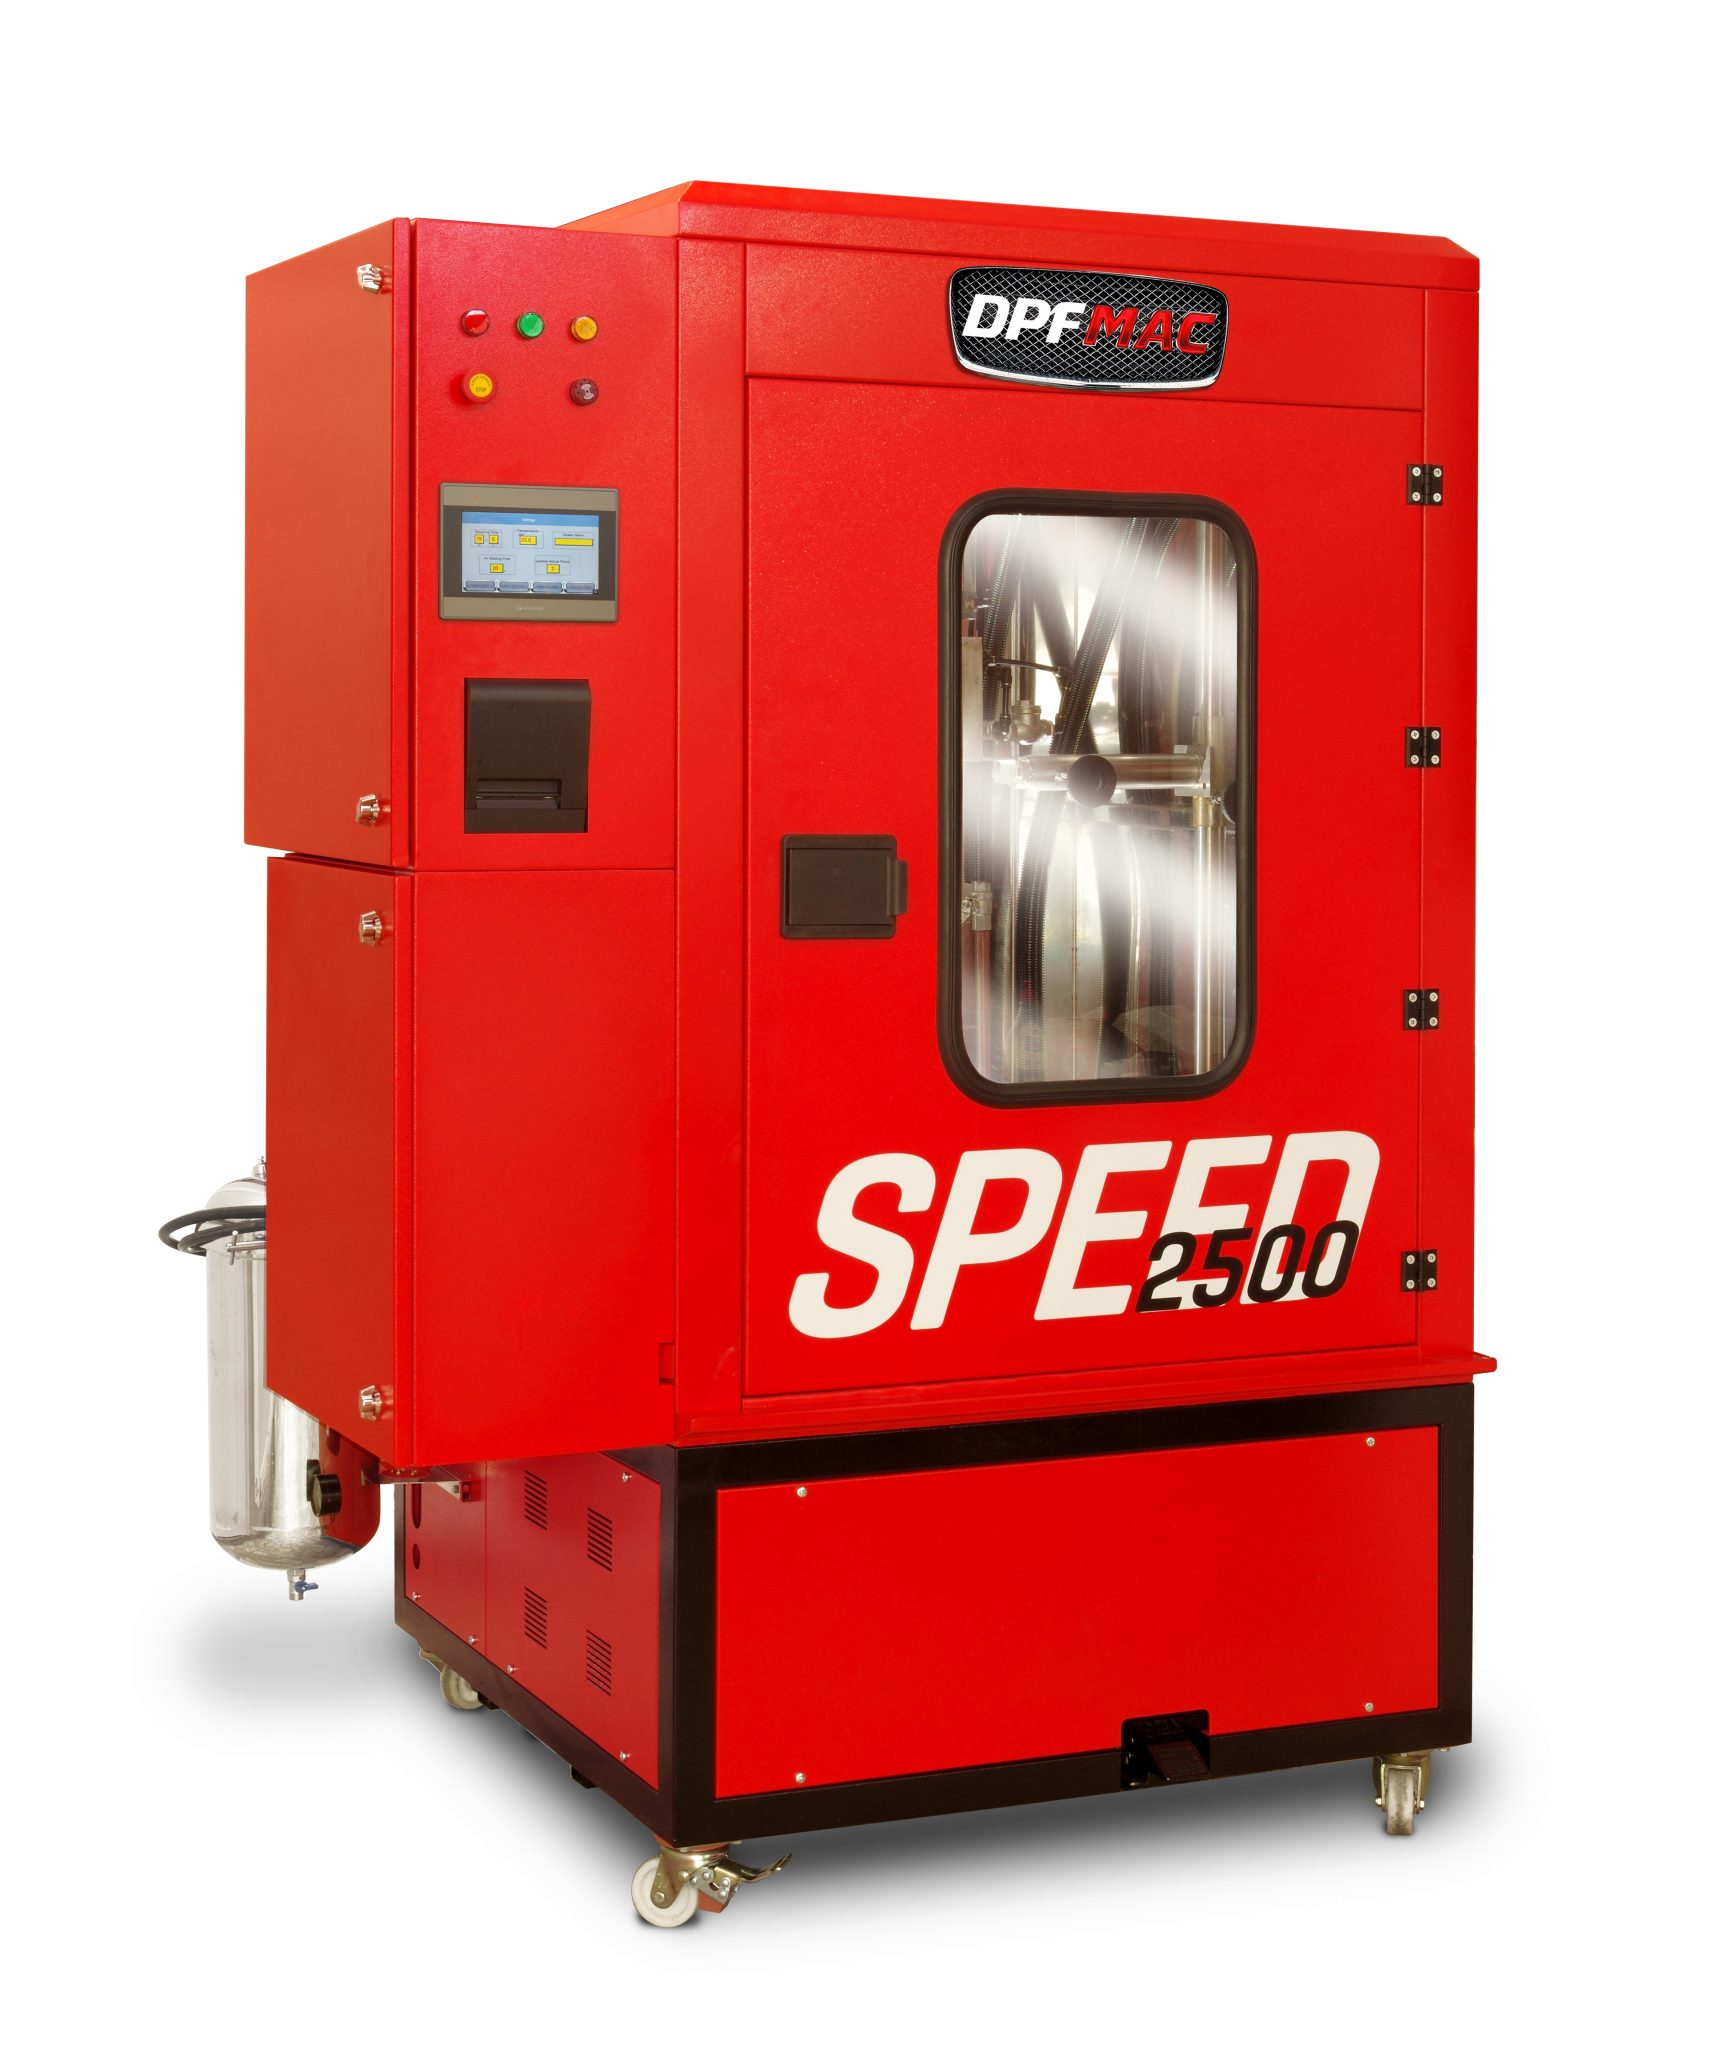 Speed 2500 DPF Cleaning Machine